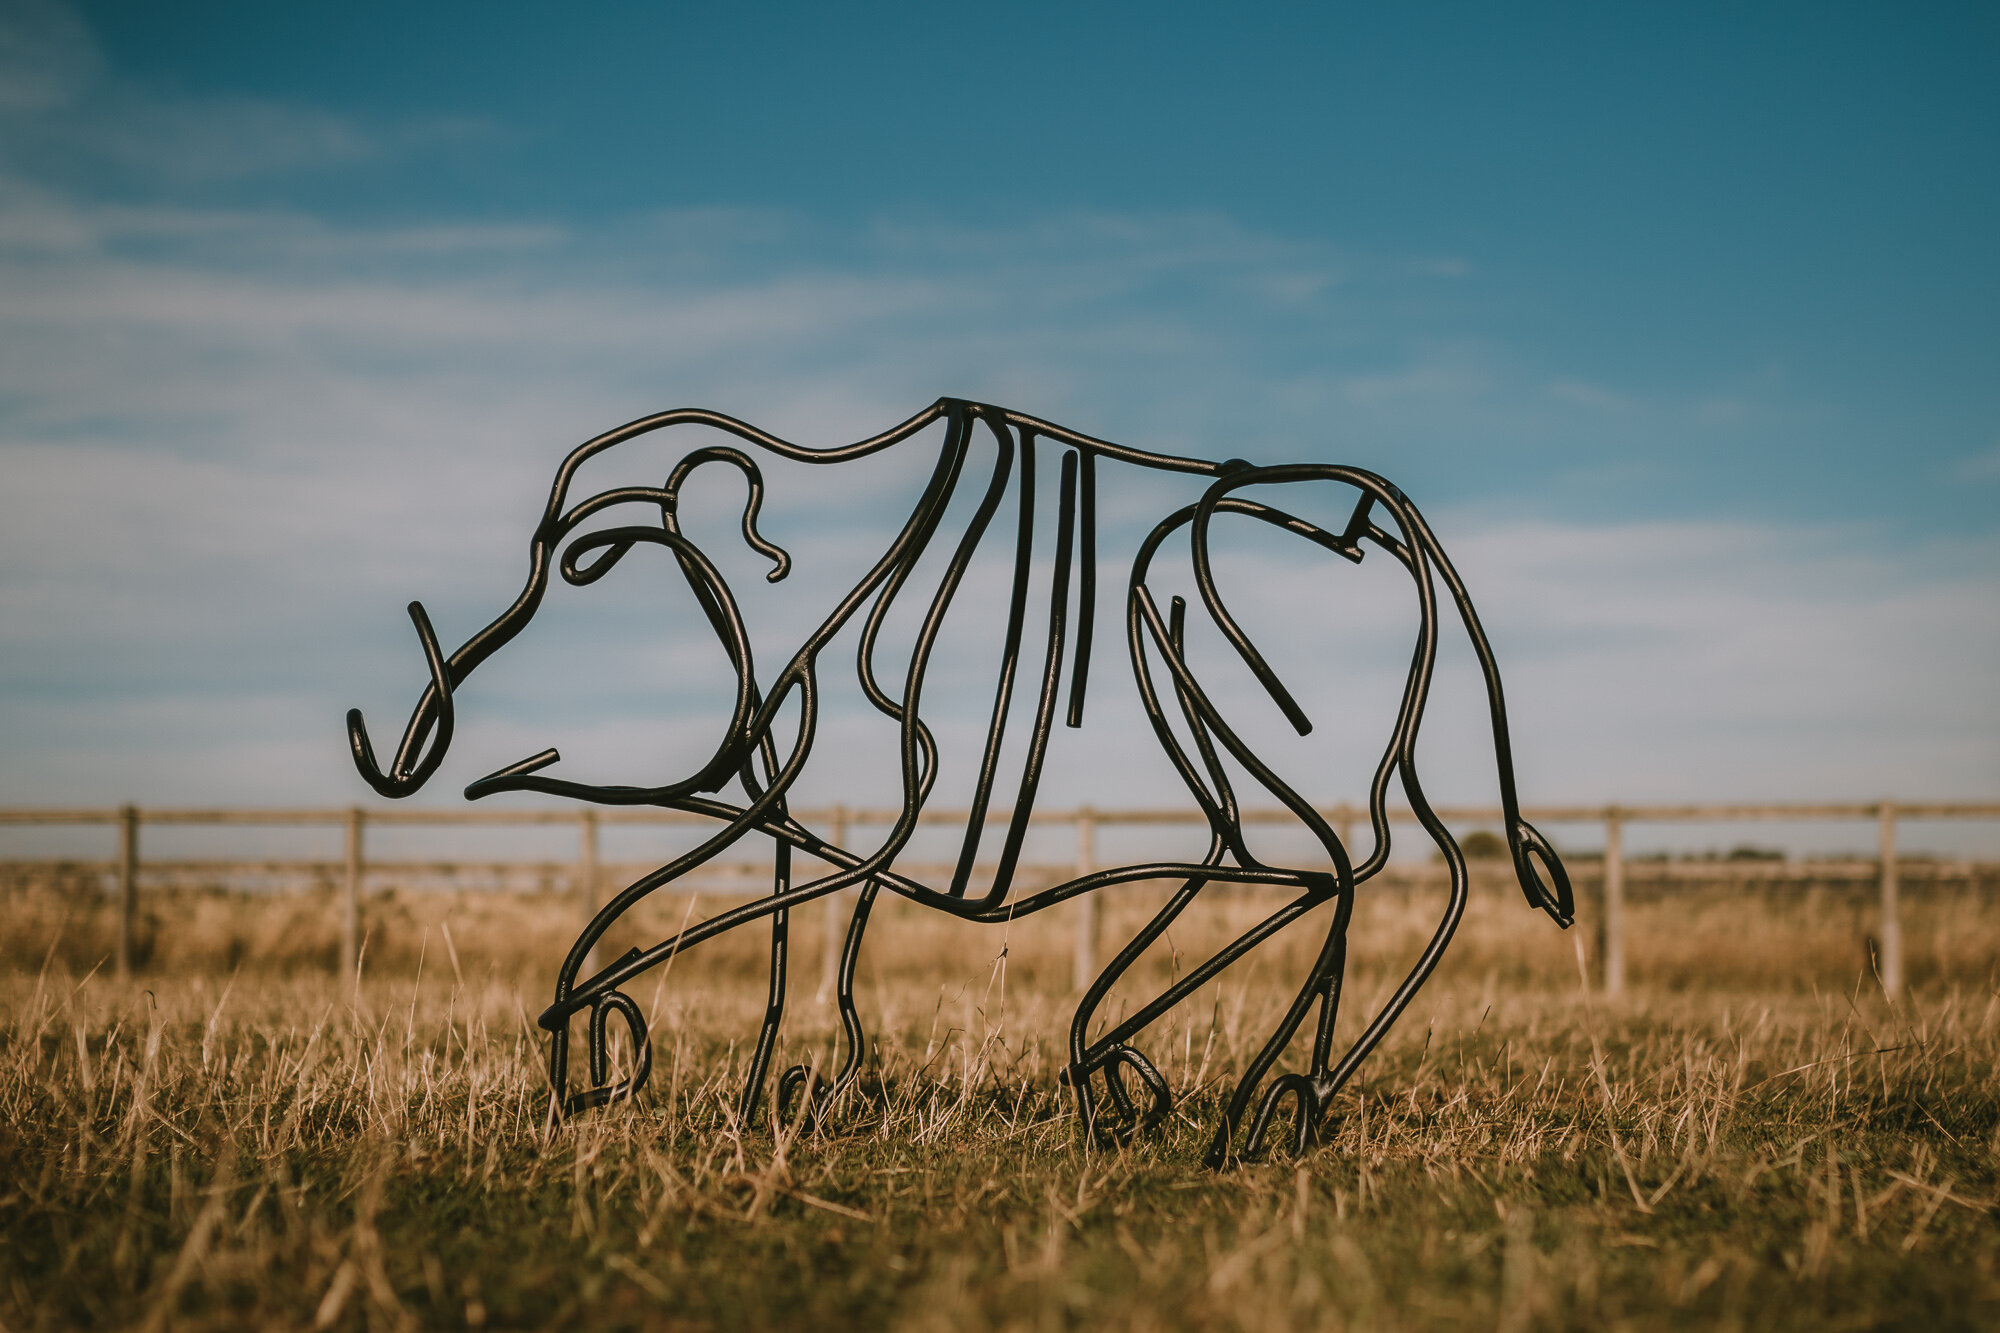 Metal Wild boar sculpture